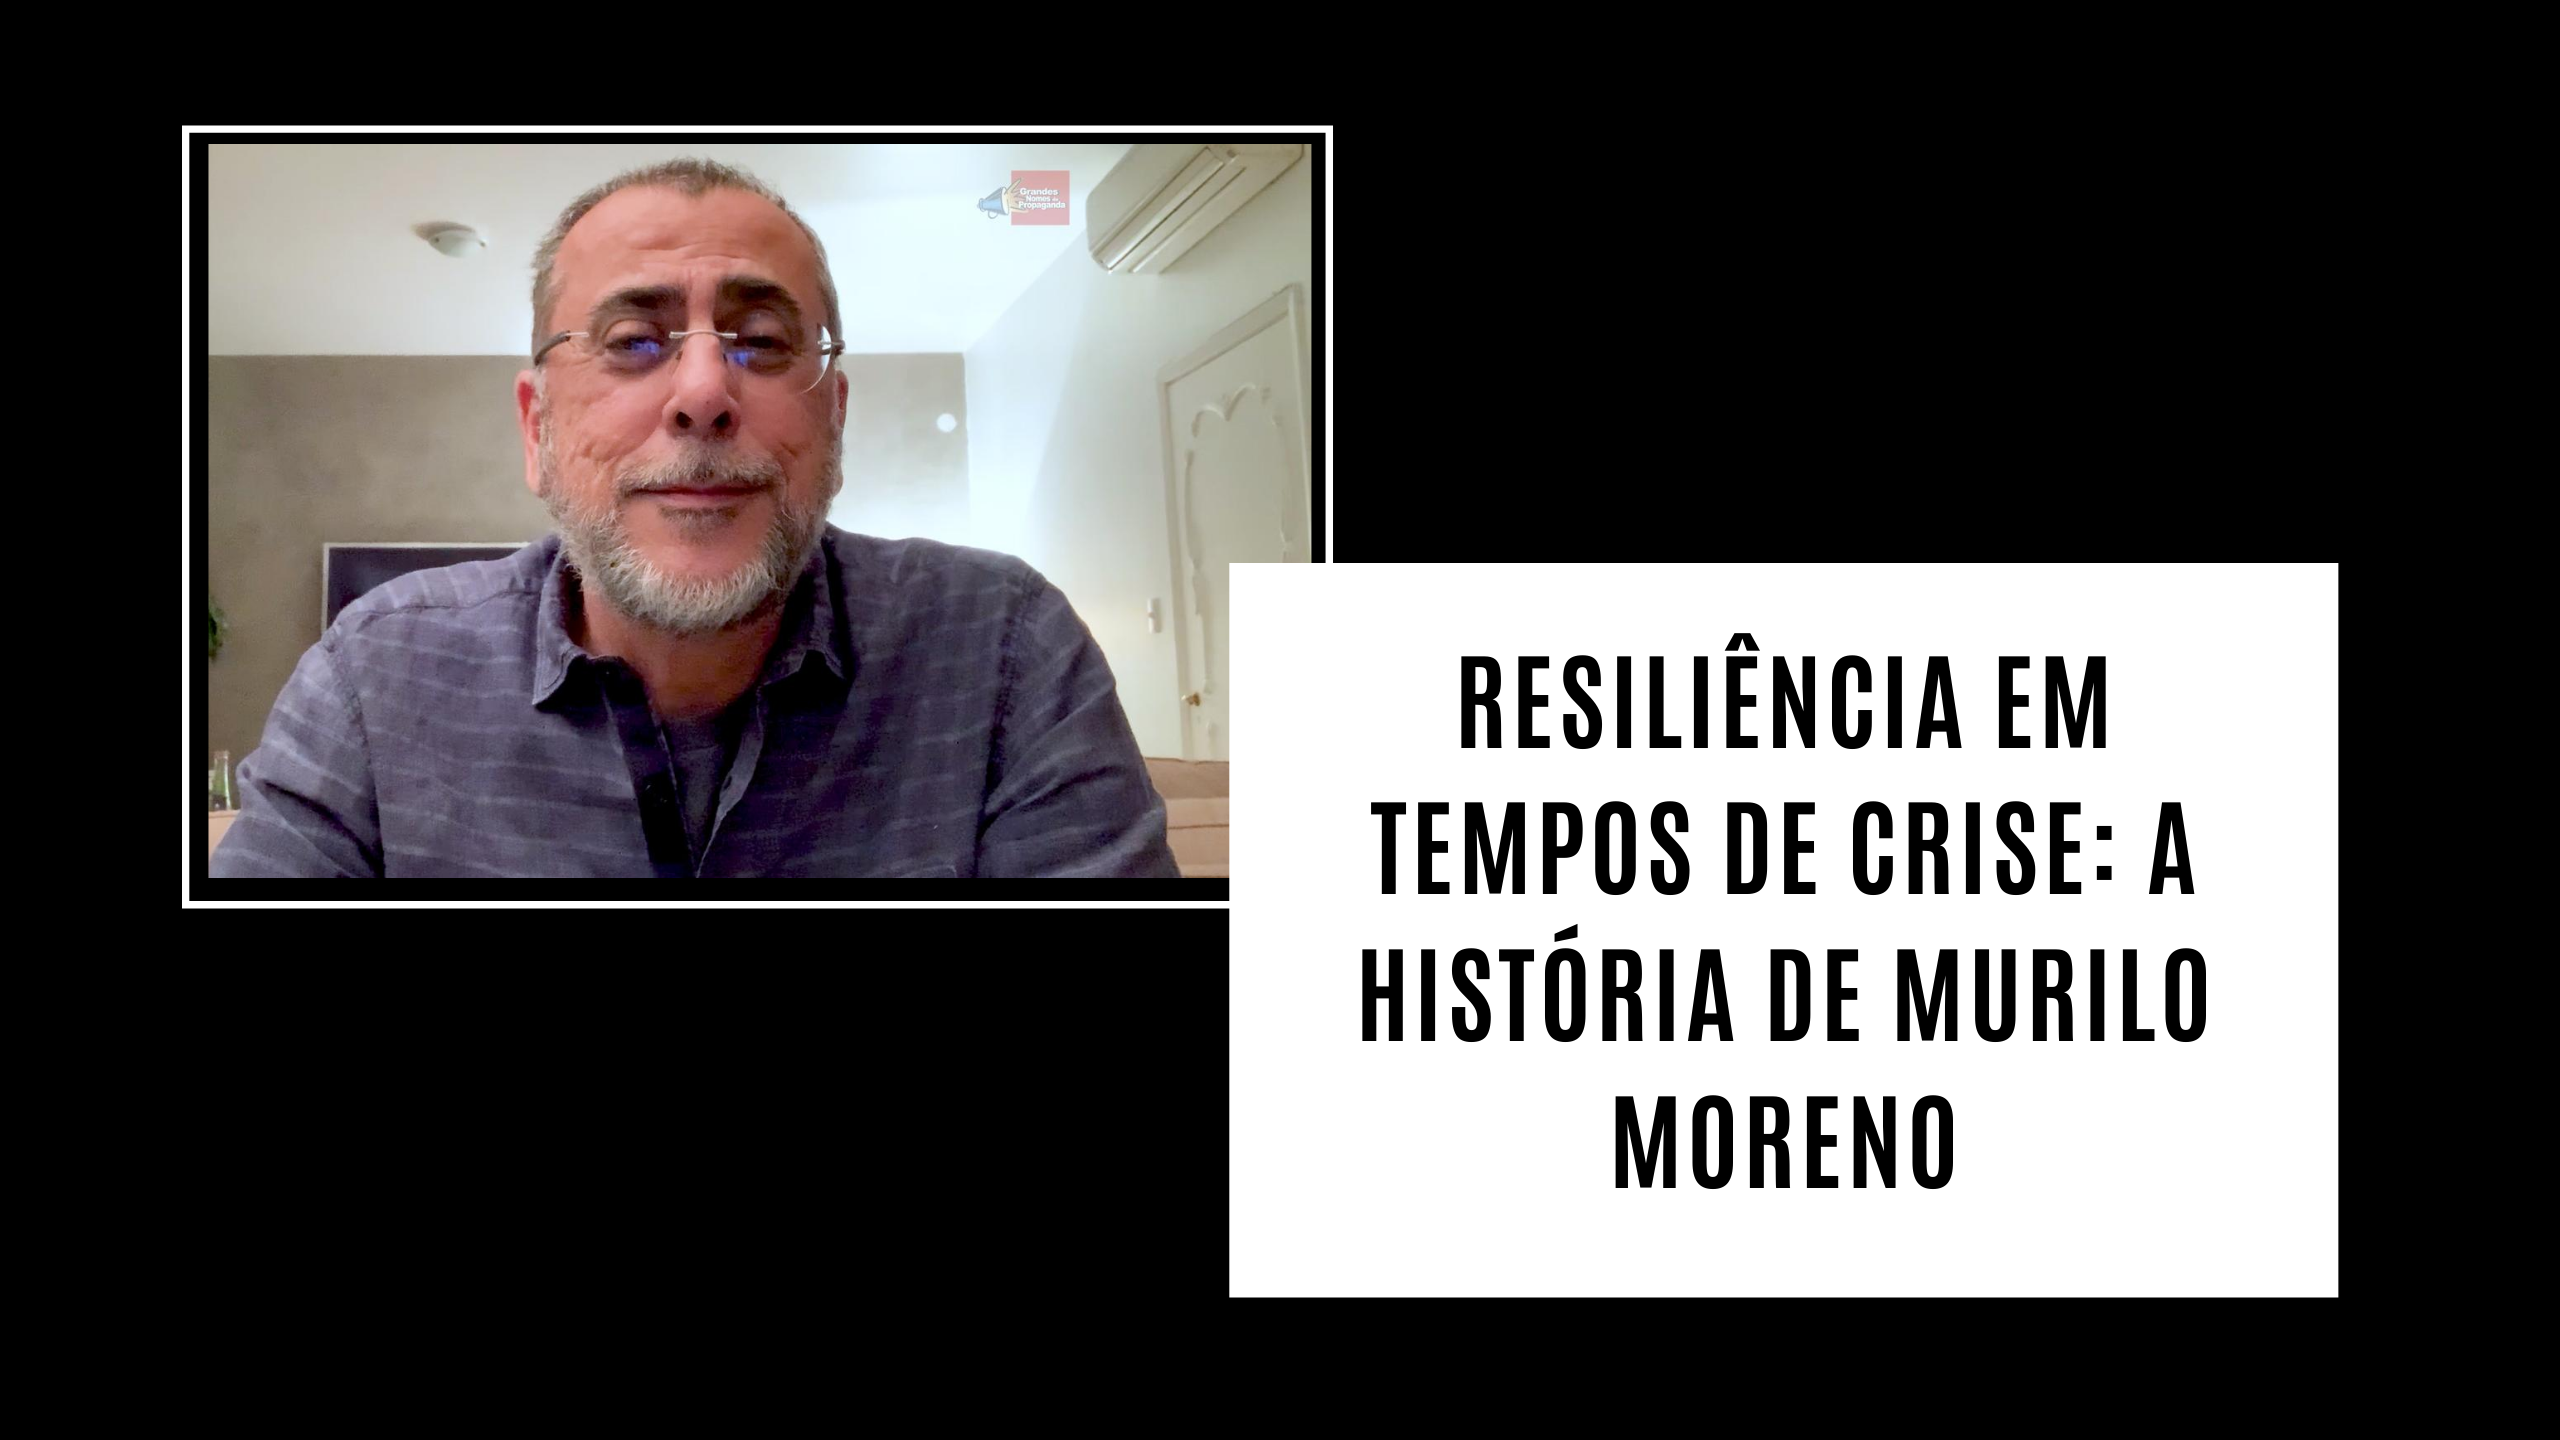 Resiliência em tempos de crise: A história de Murilo Moreno